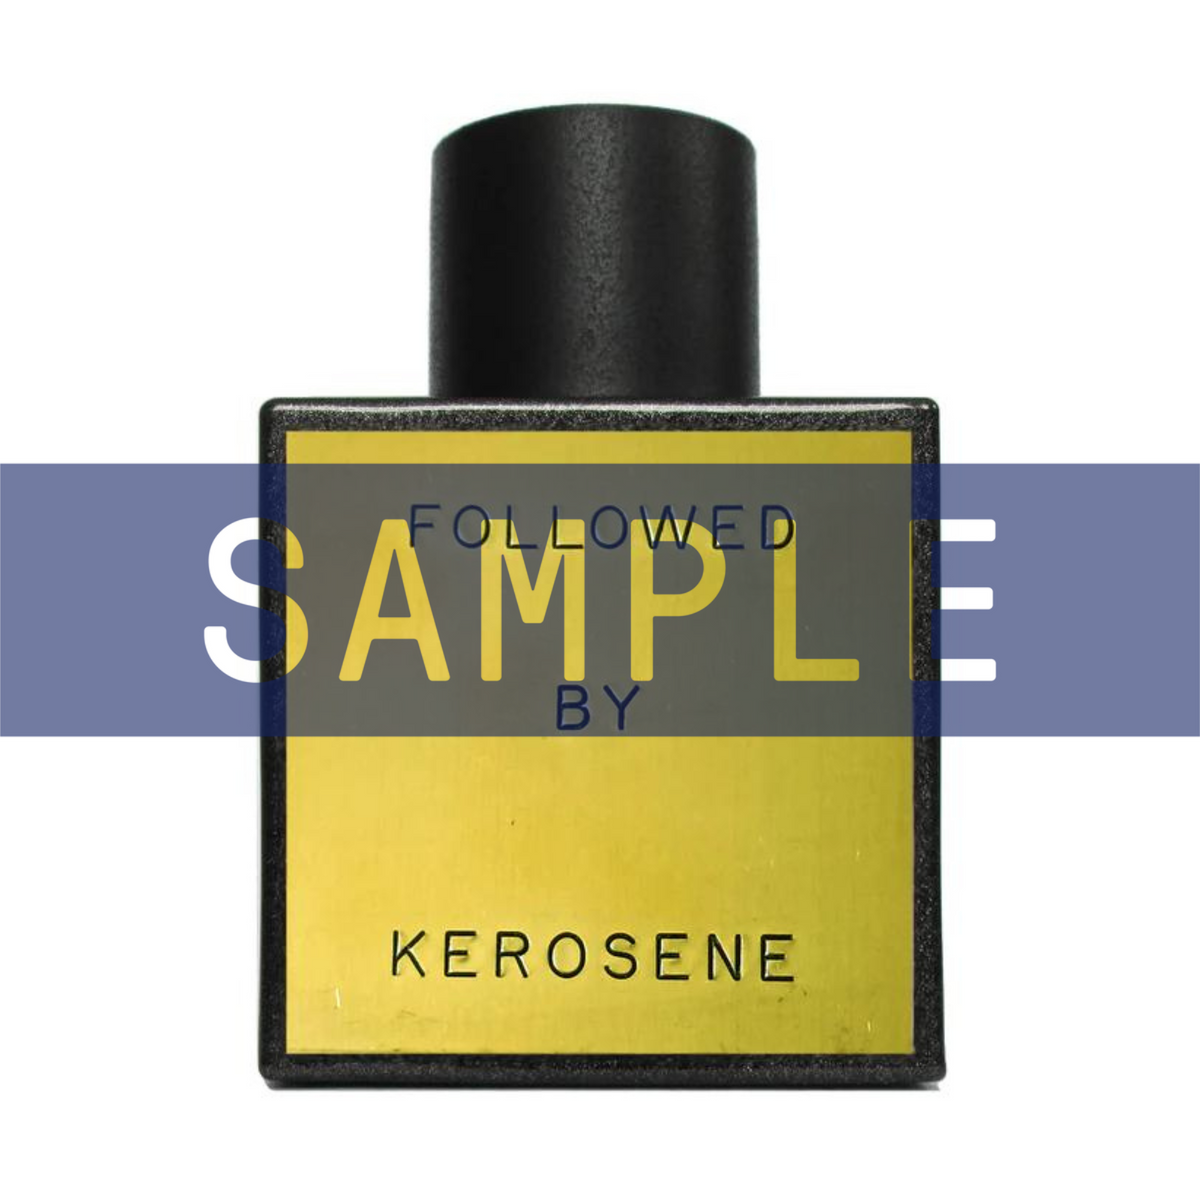 Primary Image of Kerosene Followed Eau De Parfum (100 ml)